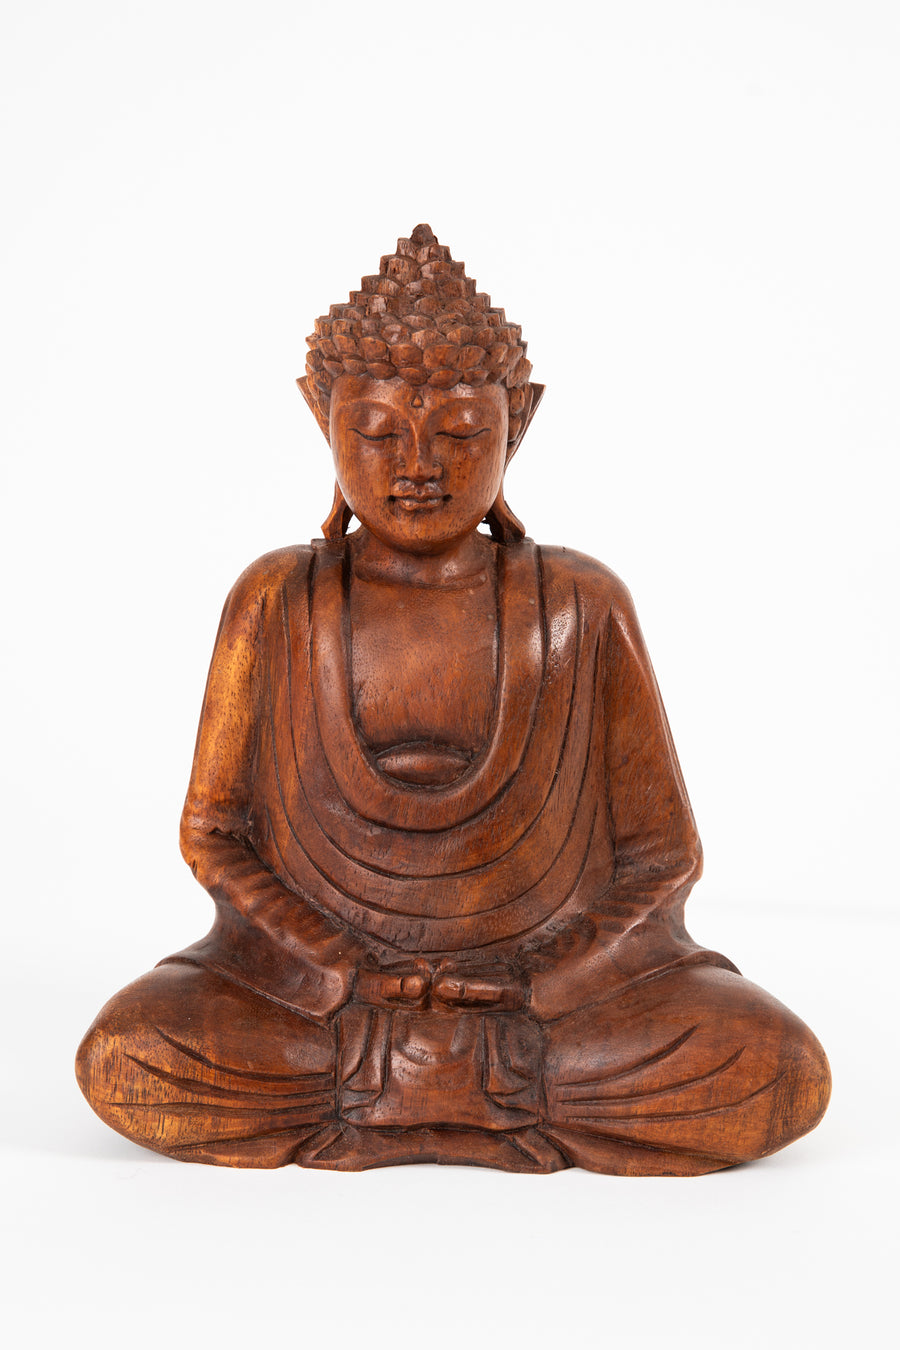 Dhyana Mudra Wooden Buddha Sculpture